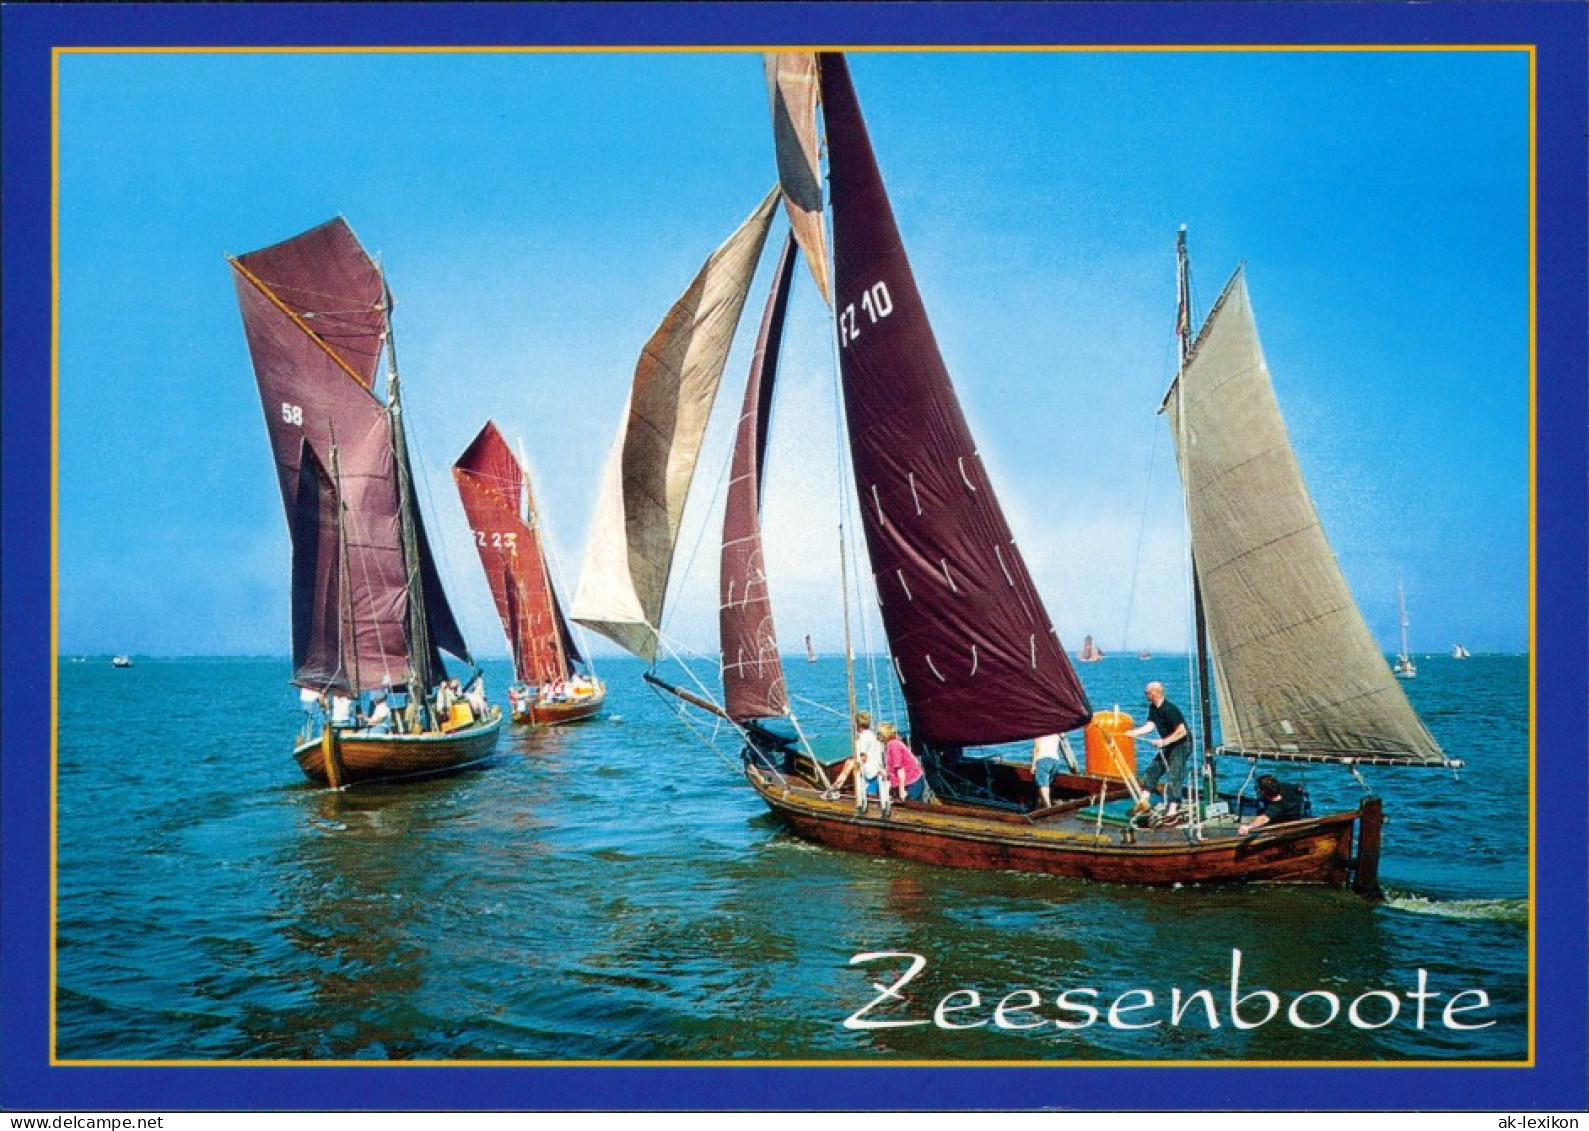 Ansichtskarte  Zeesenboote 1995 - Segelboote